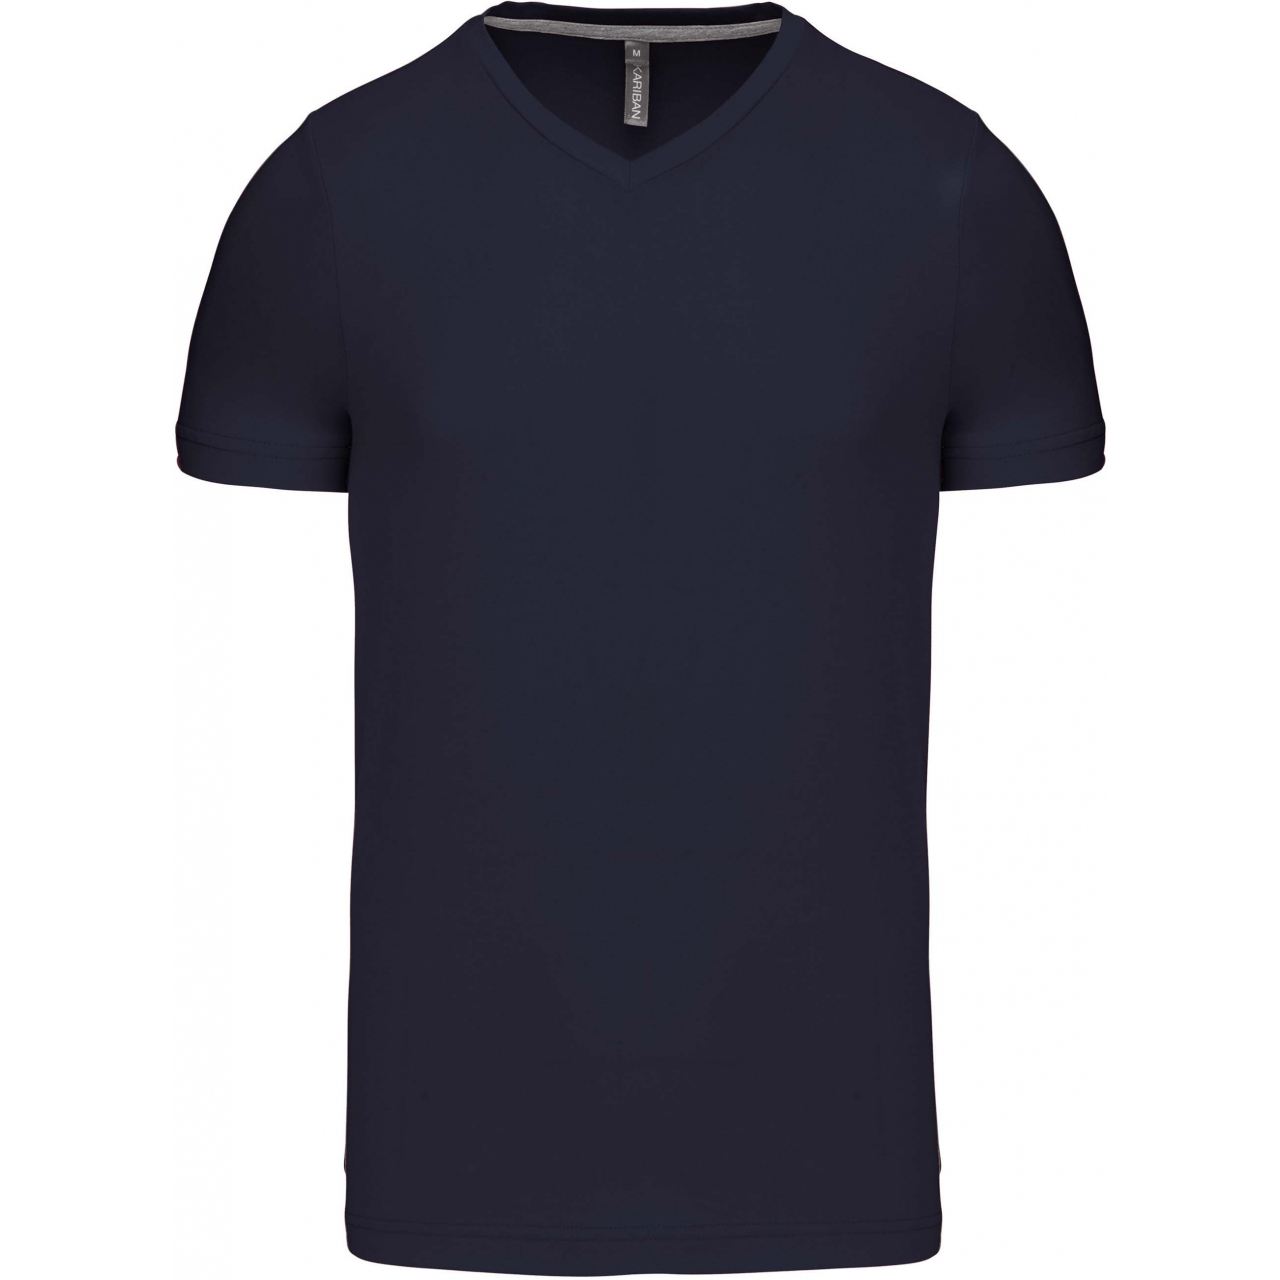 Pánské tričko Kariban krátký rukáv V-neck - navy, XL